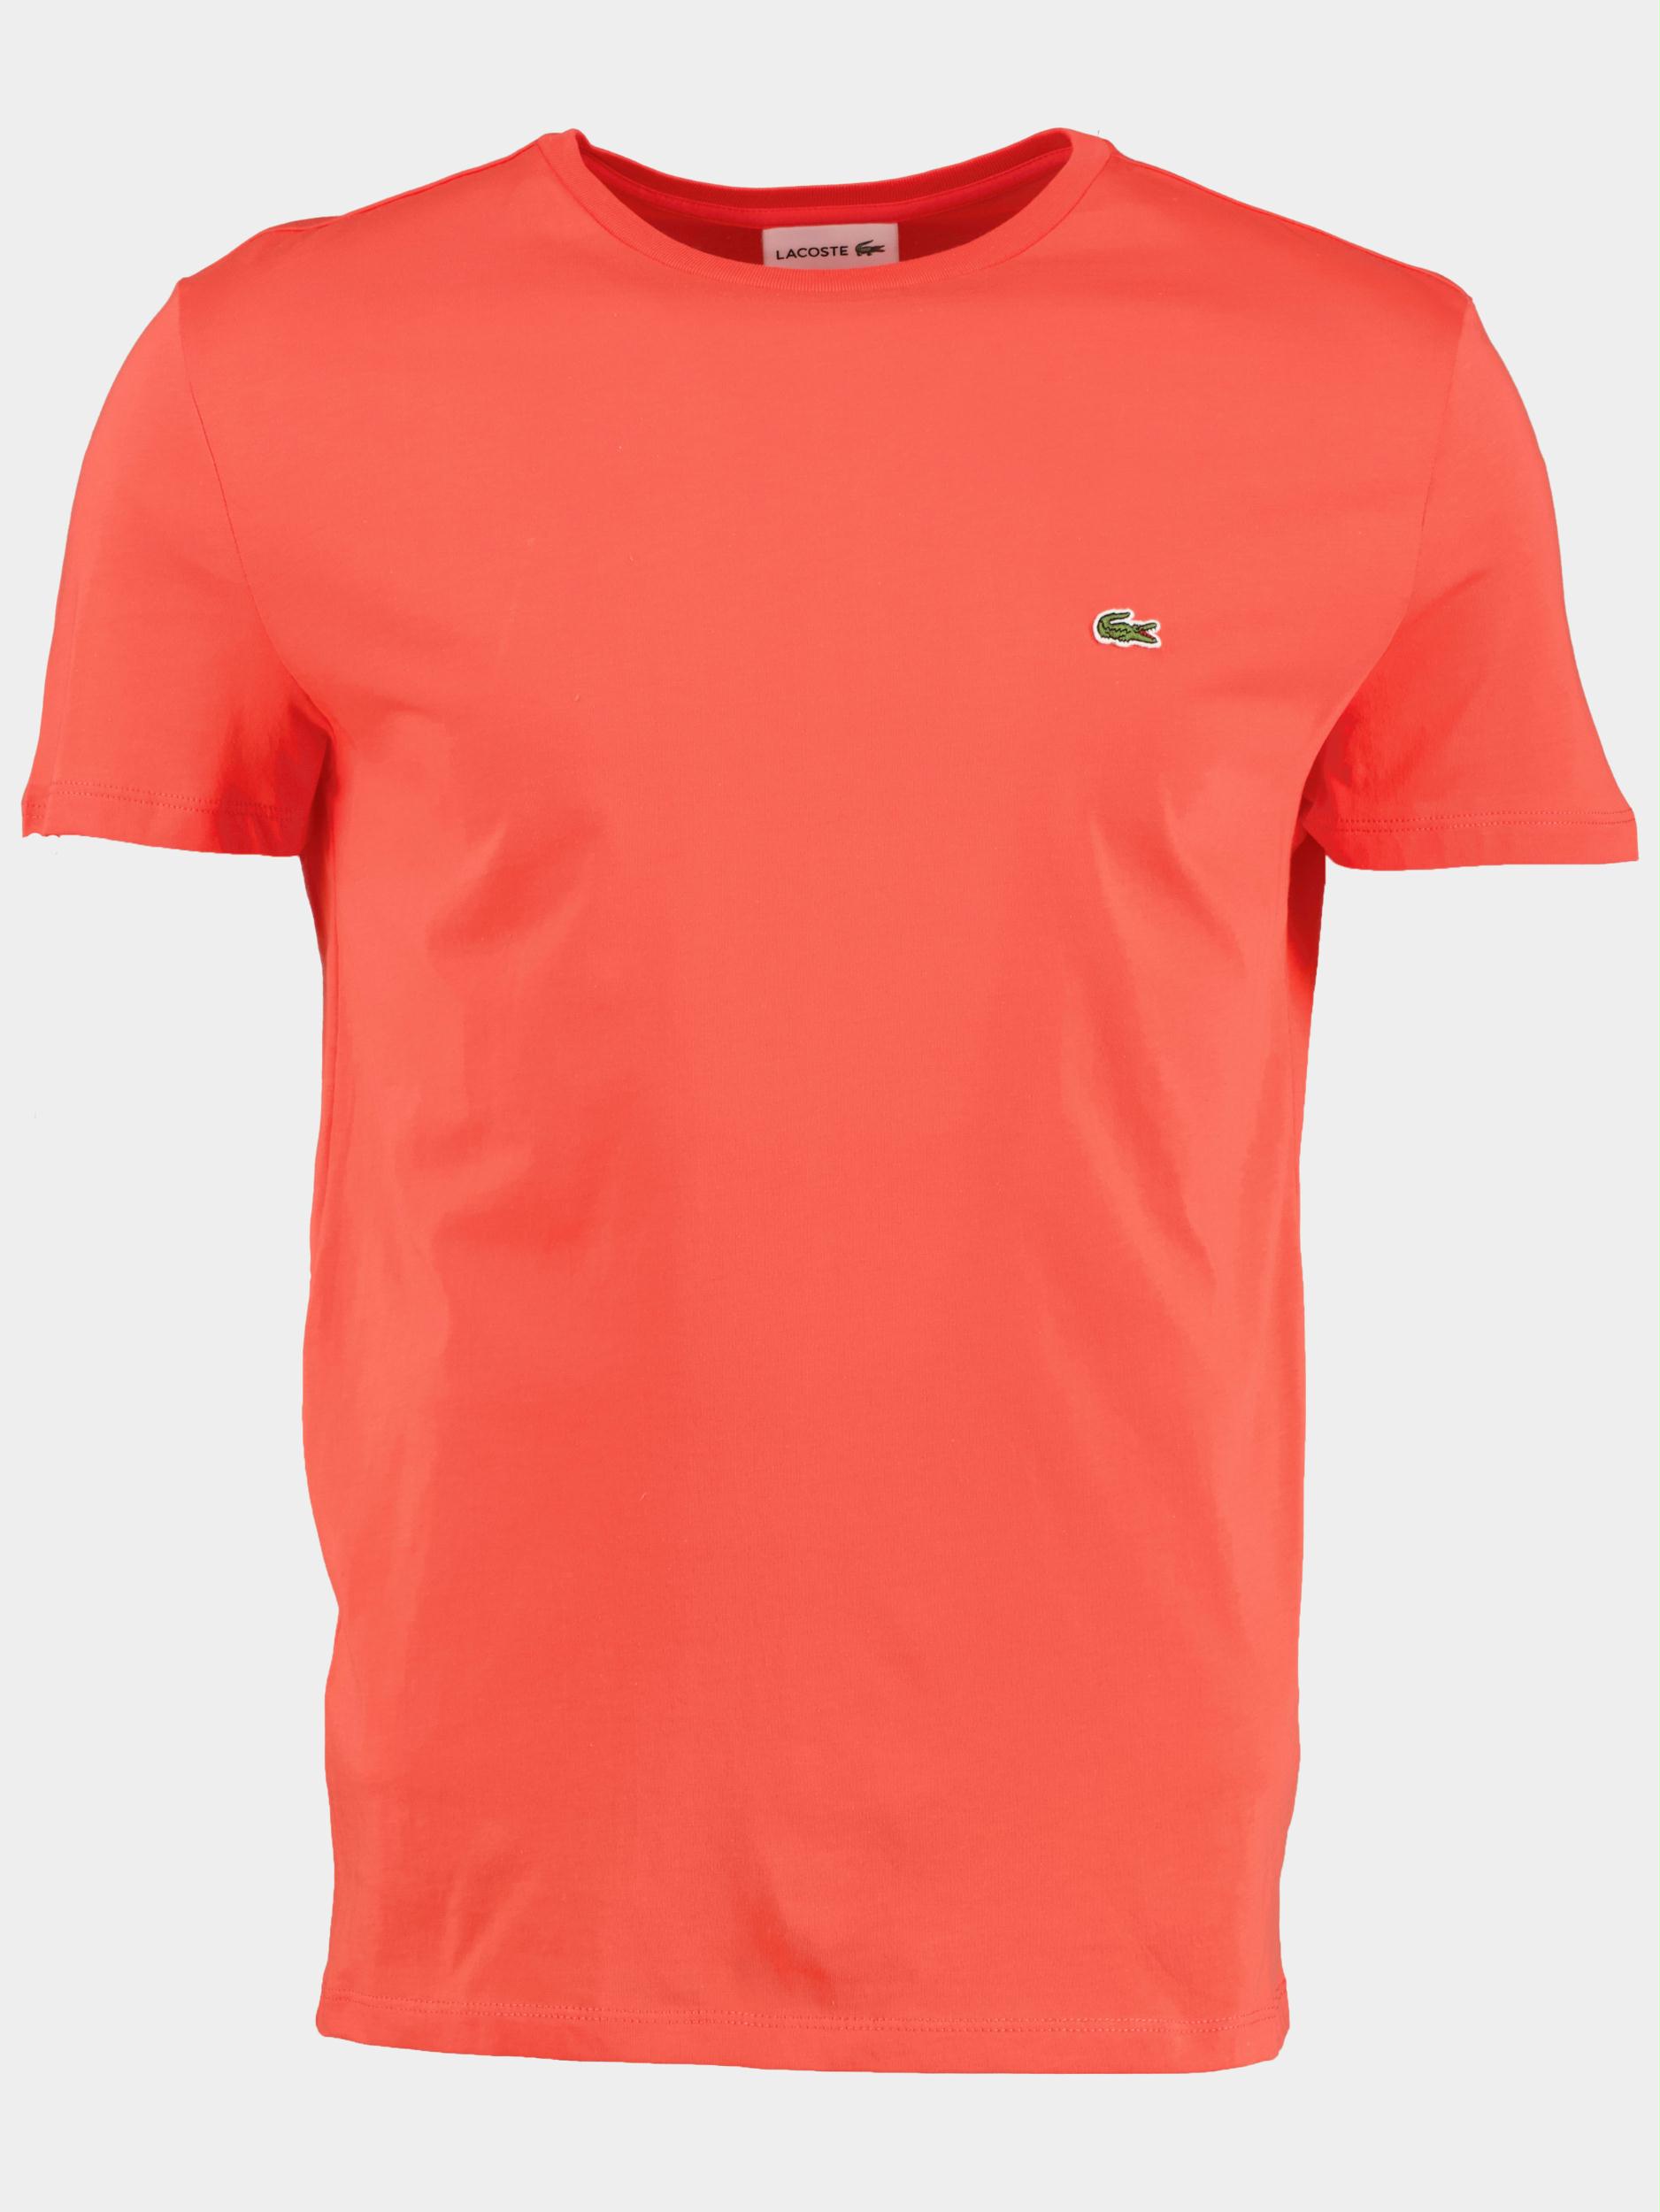 Lacoste T-shirt korte mouw Oranje  TH6709/02K